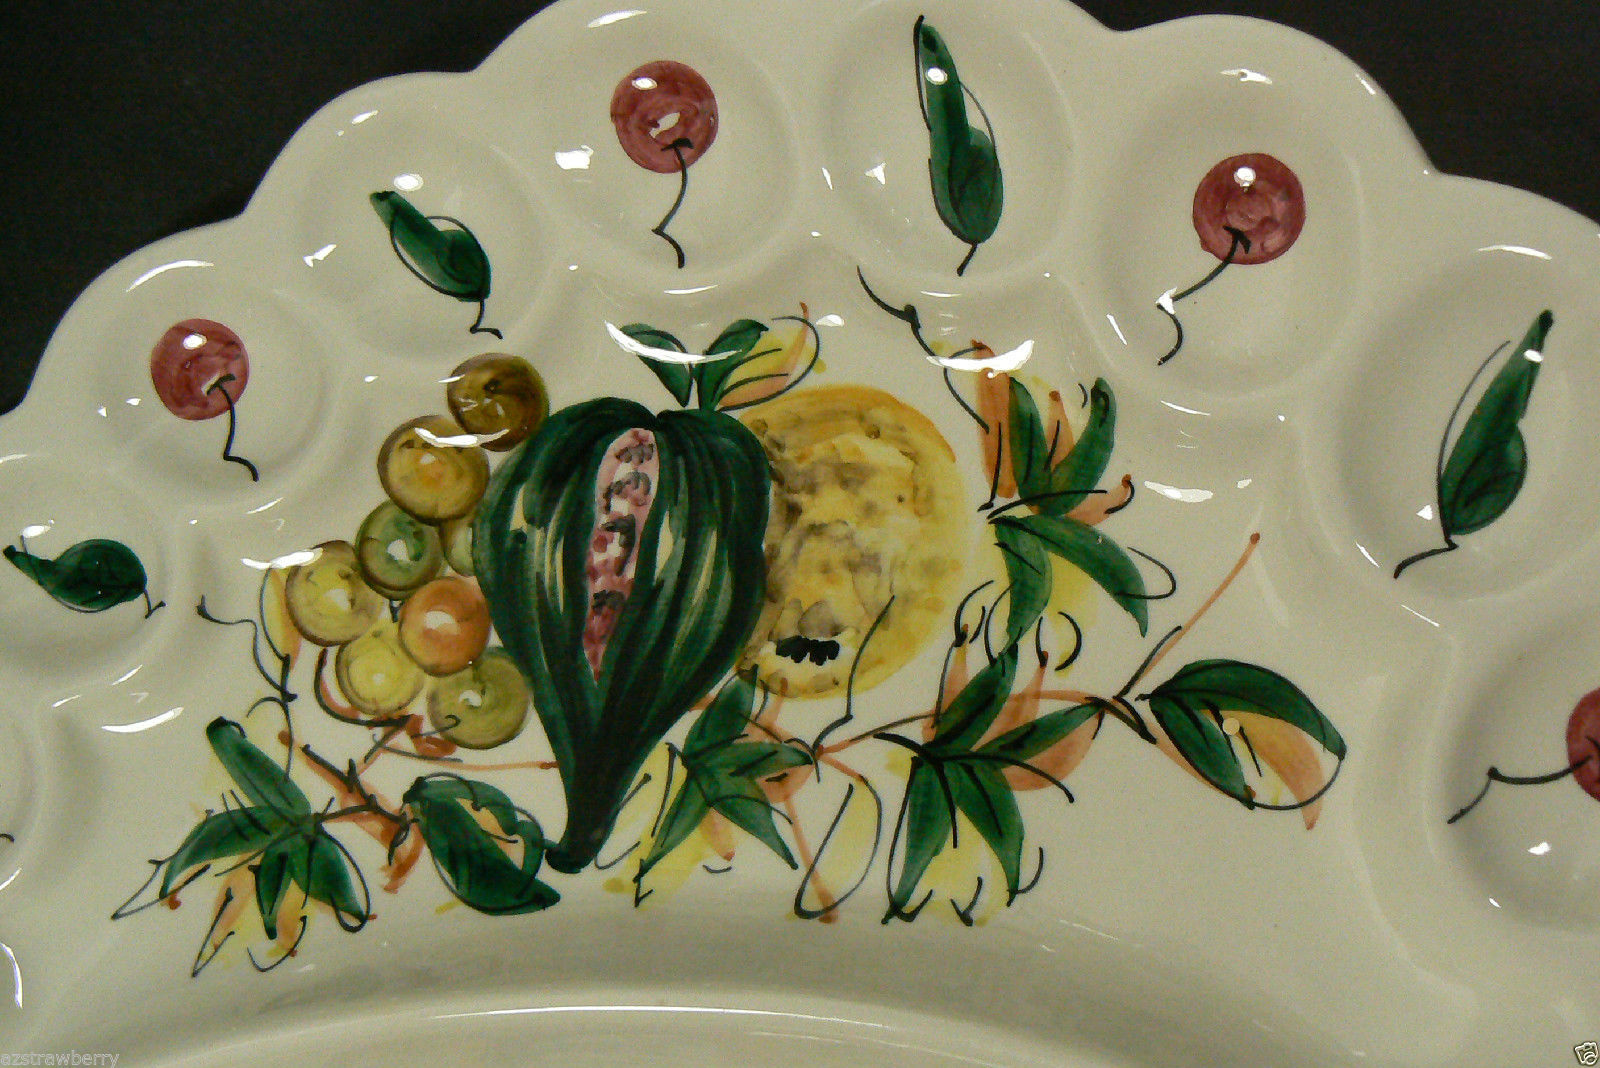 One-of-a-Kind Vintage Handpainted Ceramic PlateServing Platter Gift Vintage Ketto Design of Veggie Platter Choux Fleur Made in Quebec